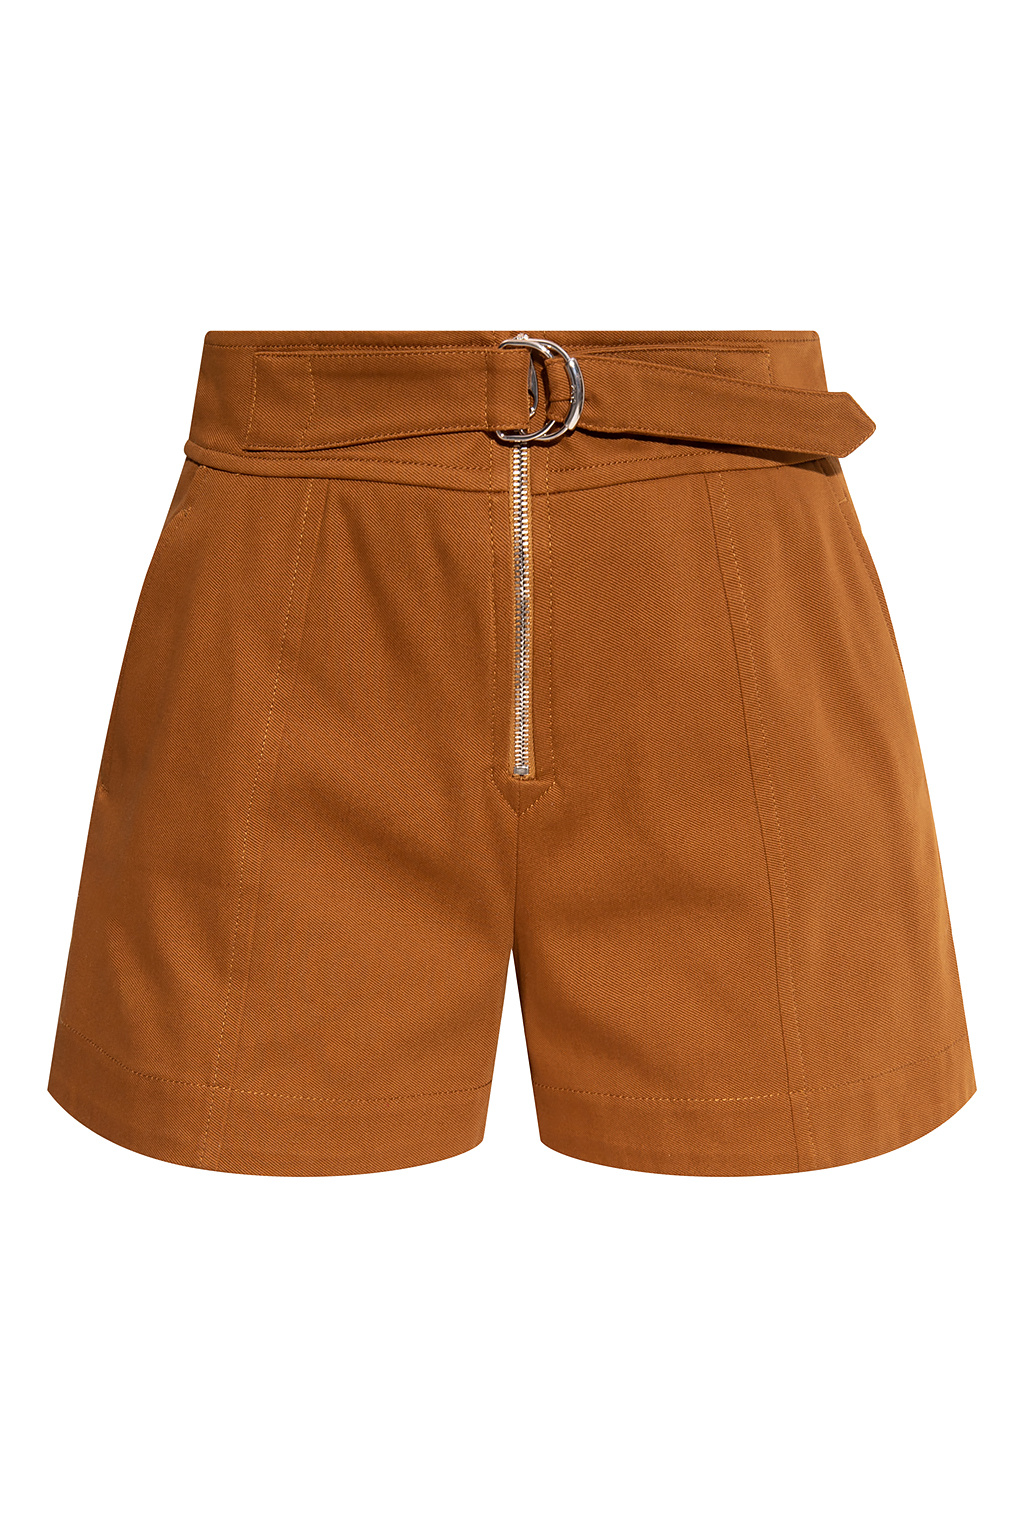 Chloé High-waisted shorts